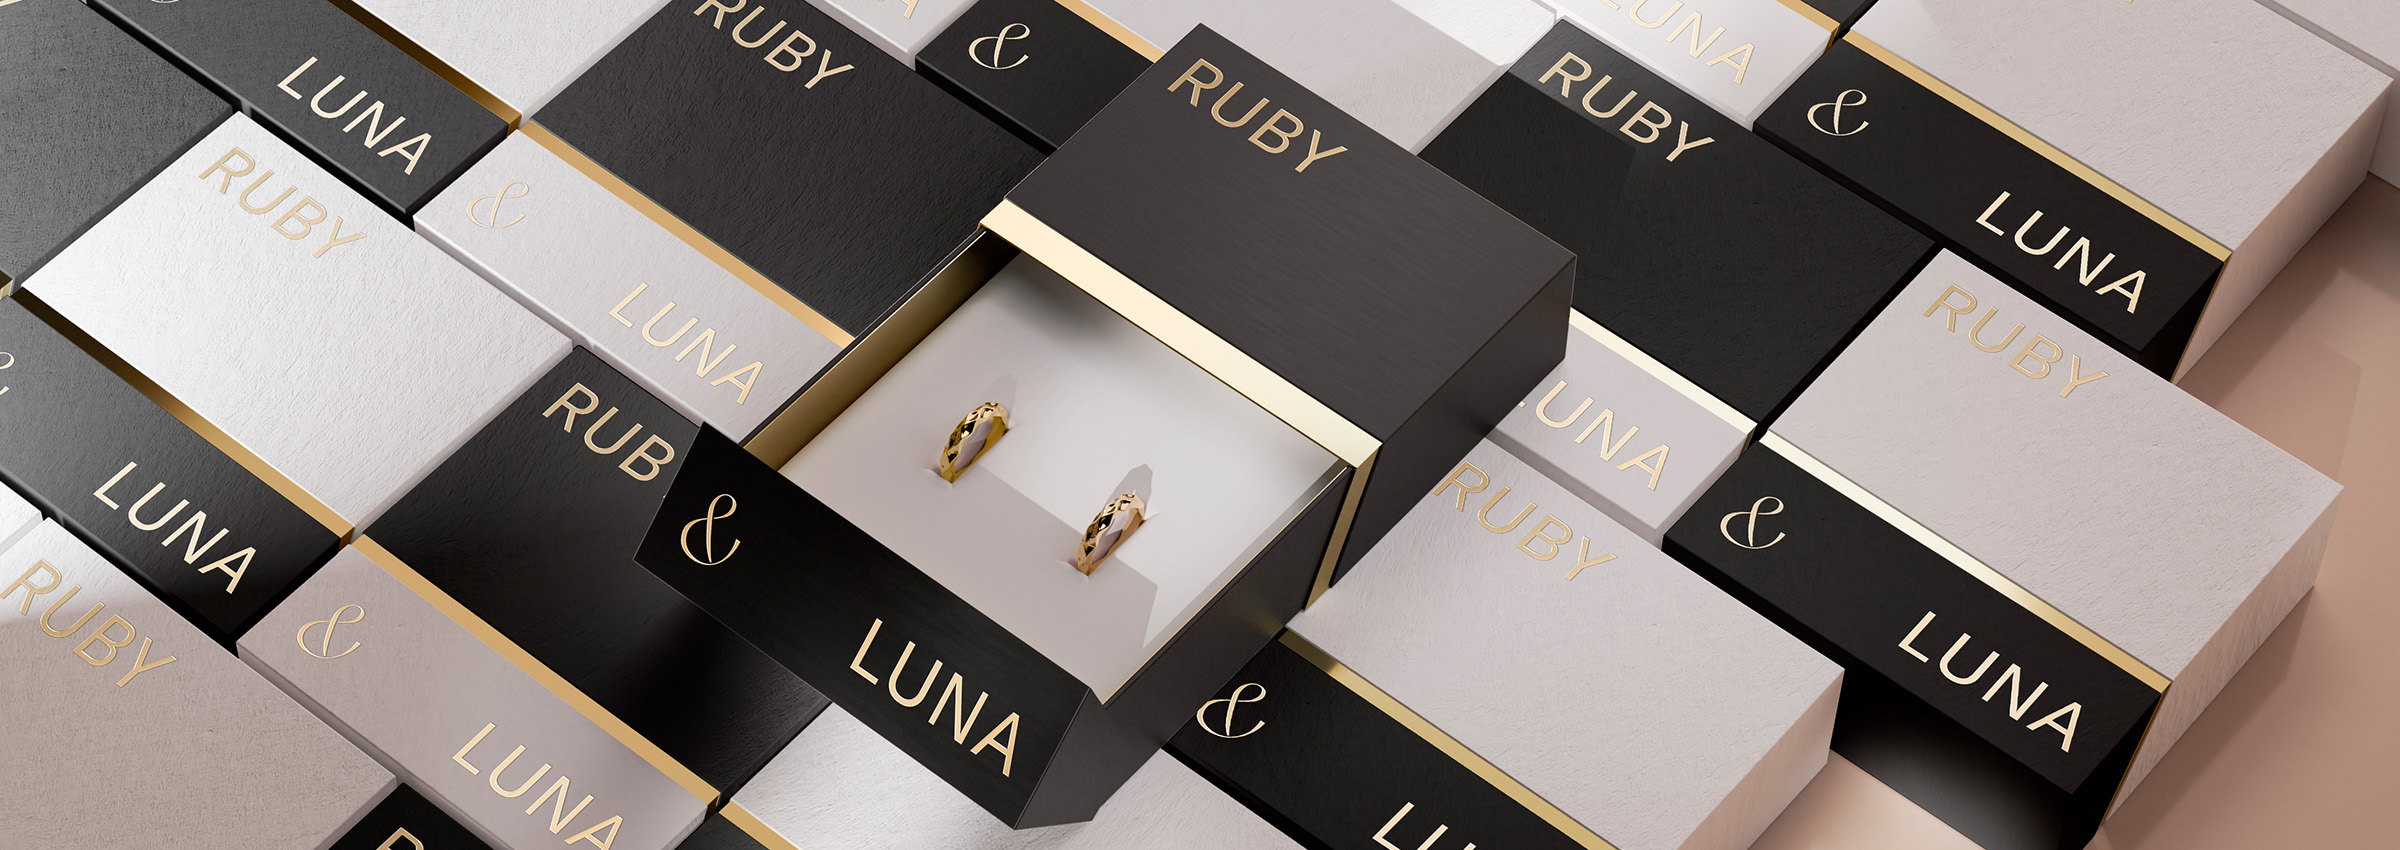 ruby & luna packaging